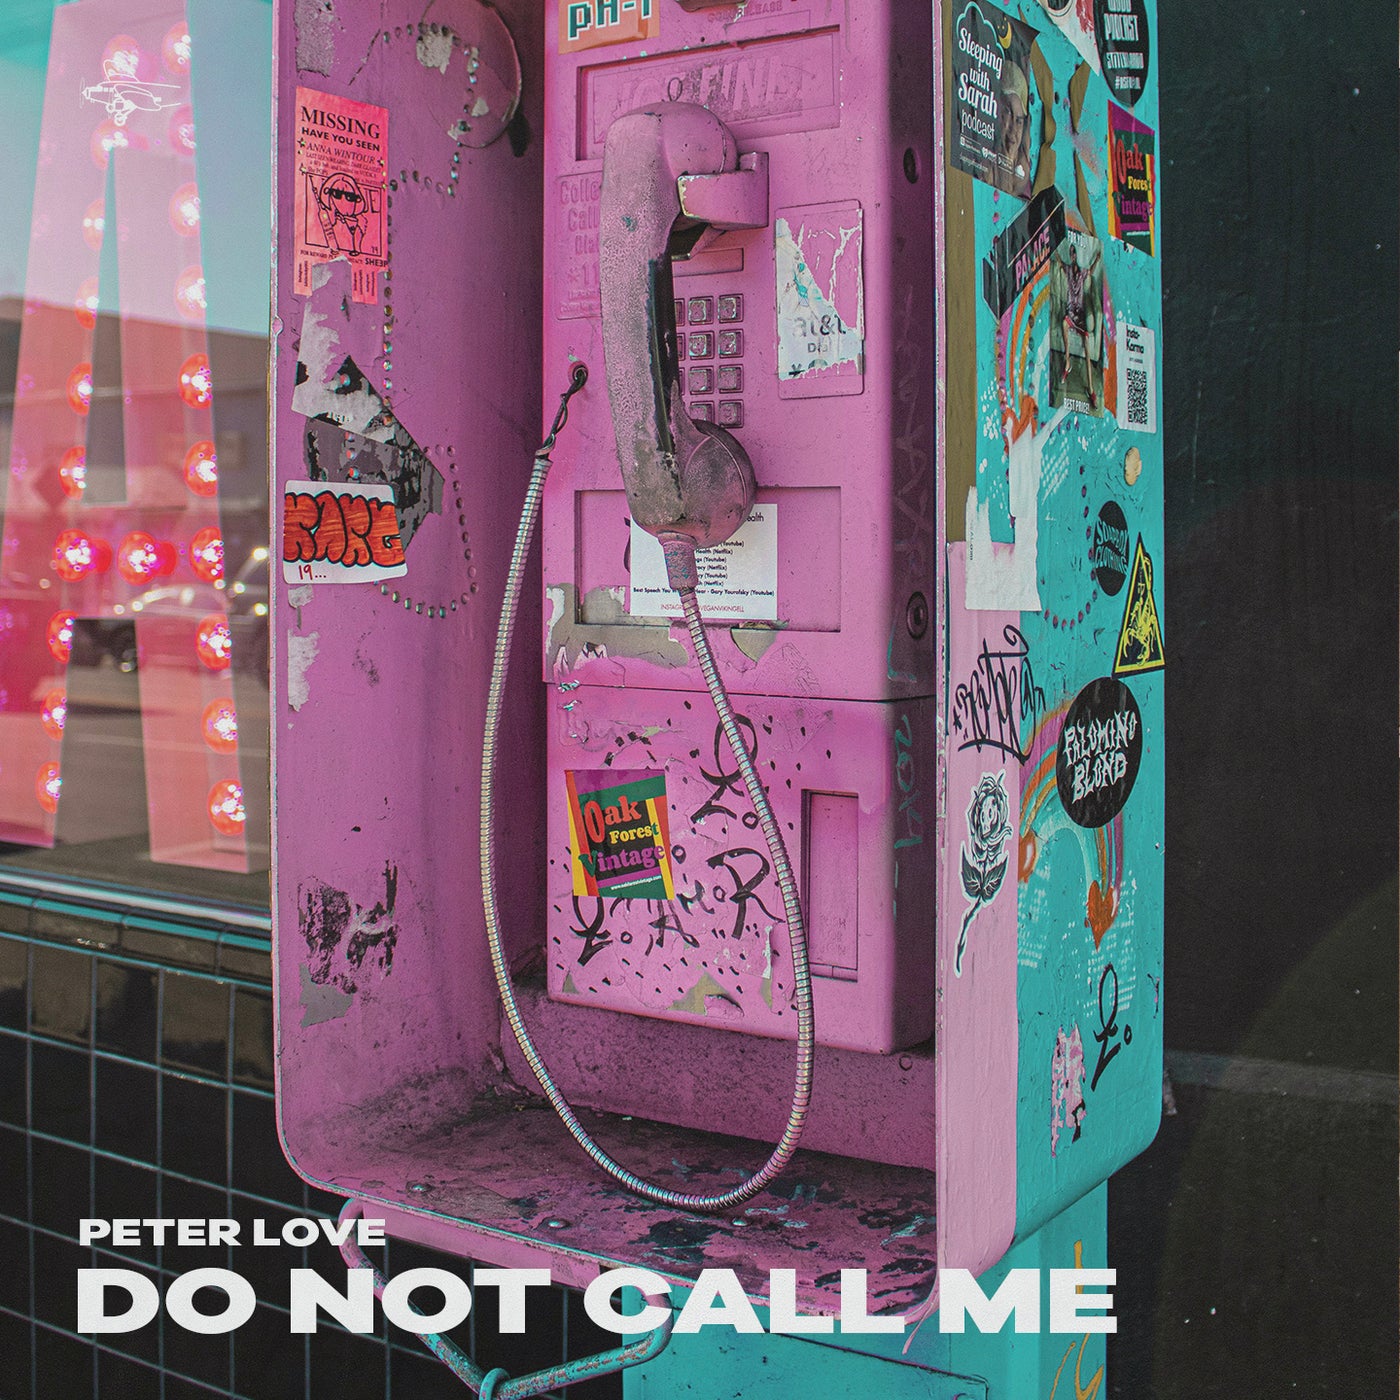 Do not call me